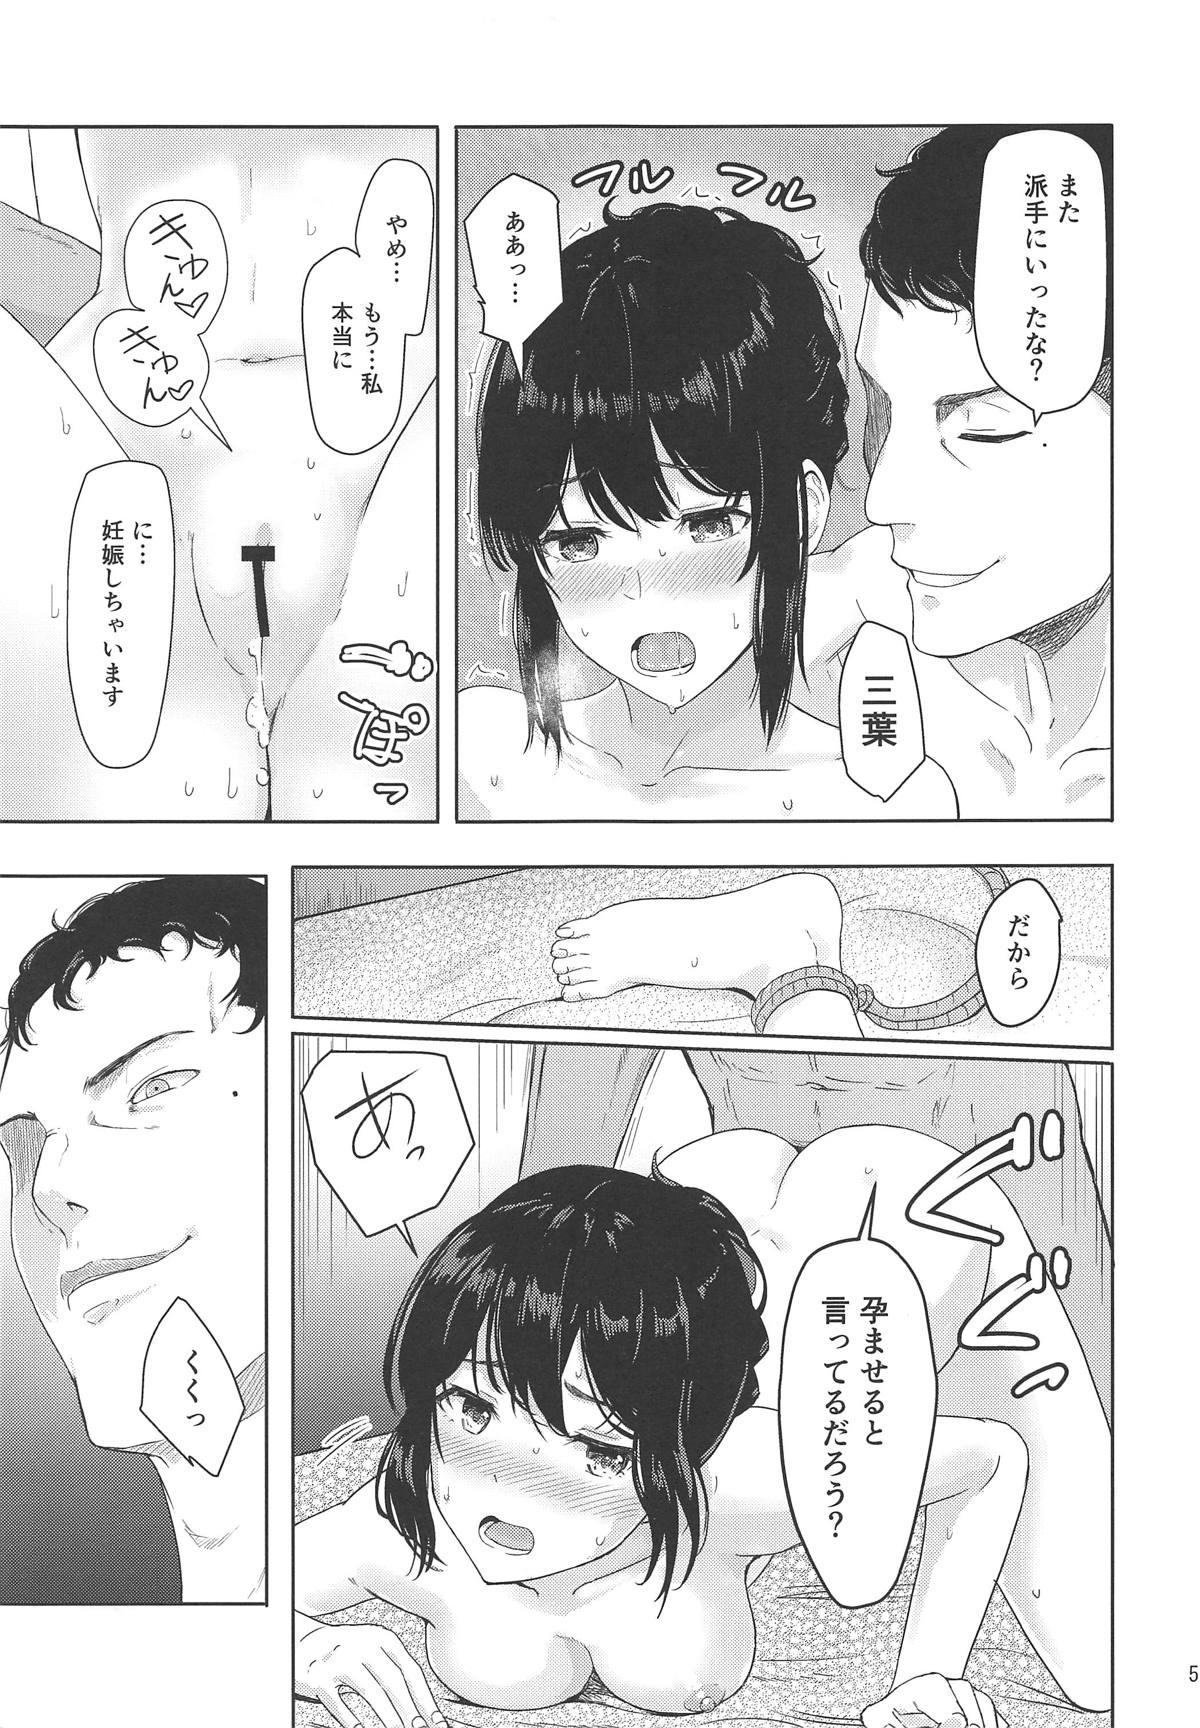 Punished Mitsuha - Kimi no na wa. Dorm - Page 4